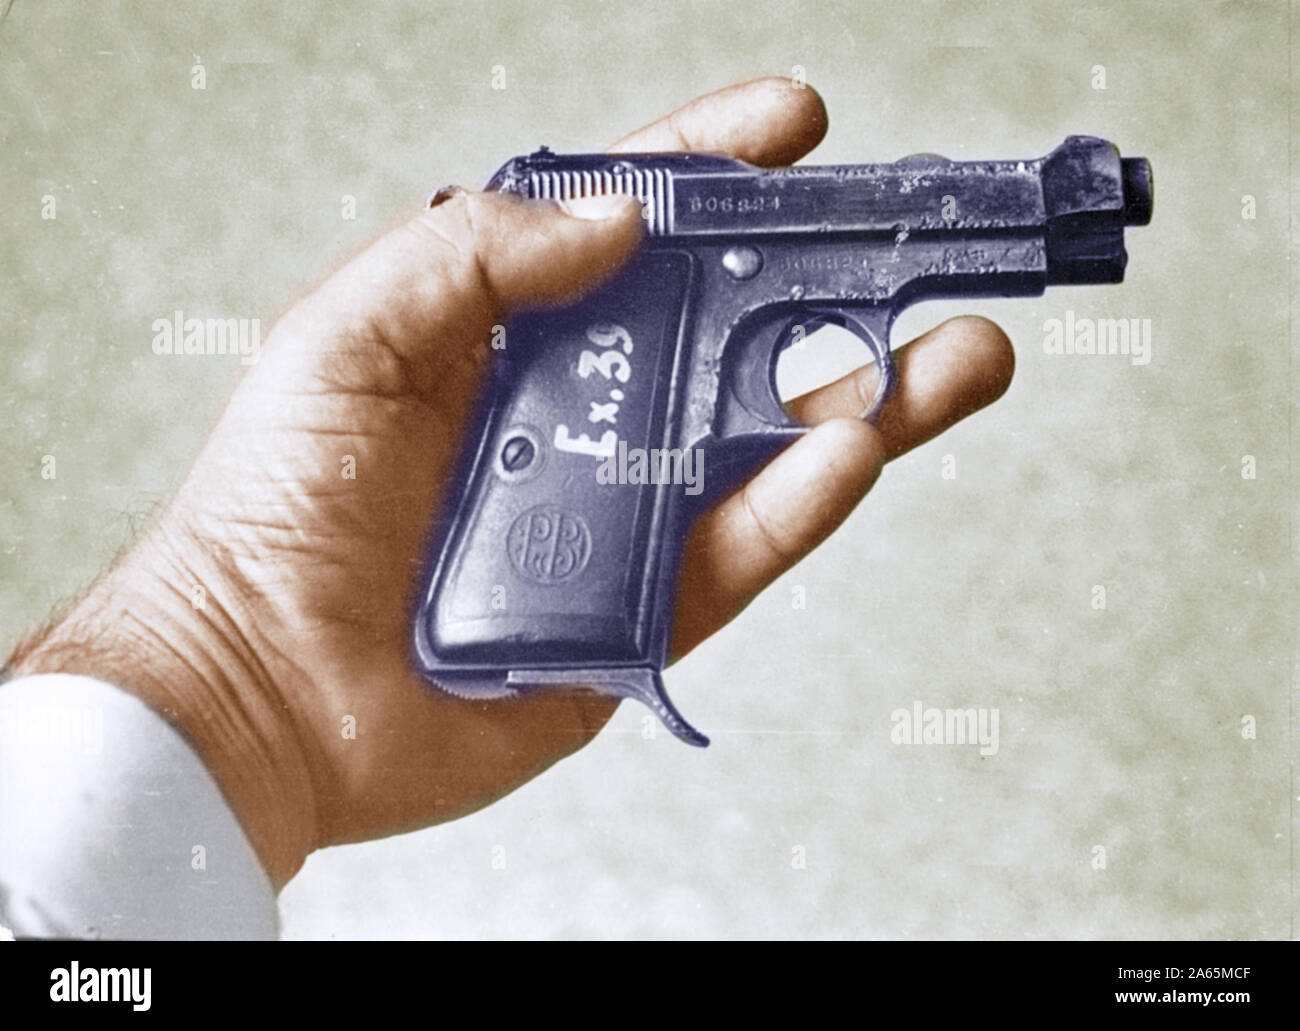 La pistola utilizzata da Nathuram Godse per uccidere il mahatma Gandhi gennaio 30, 1948 Foto Stock